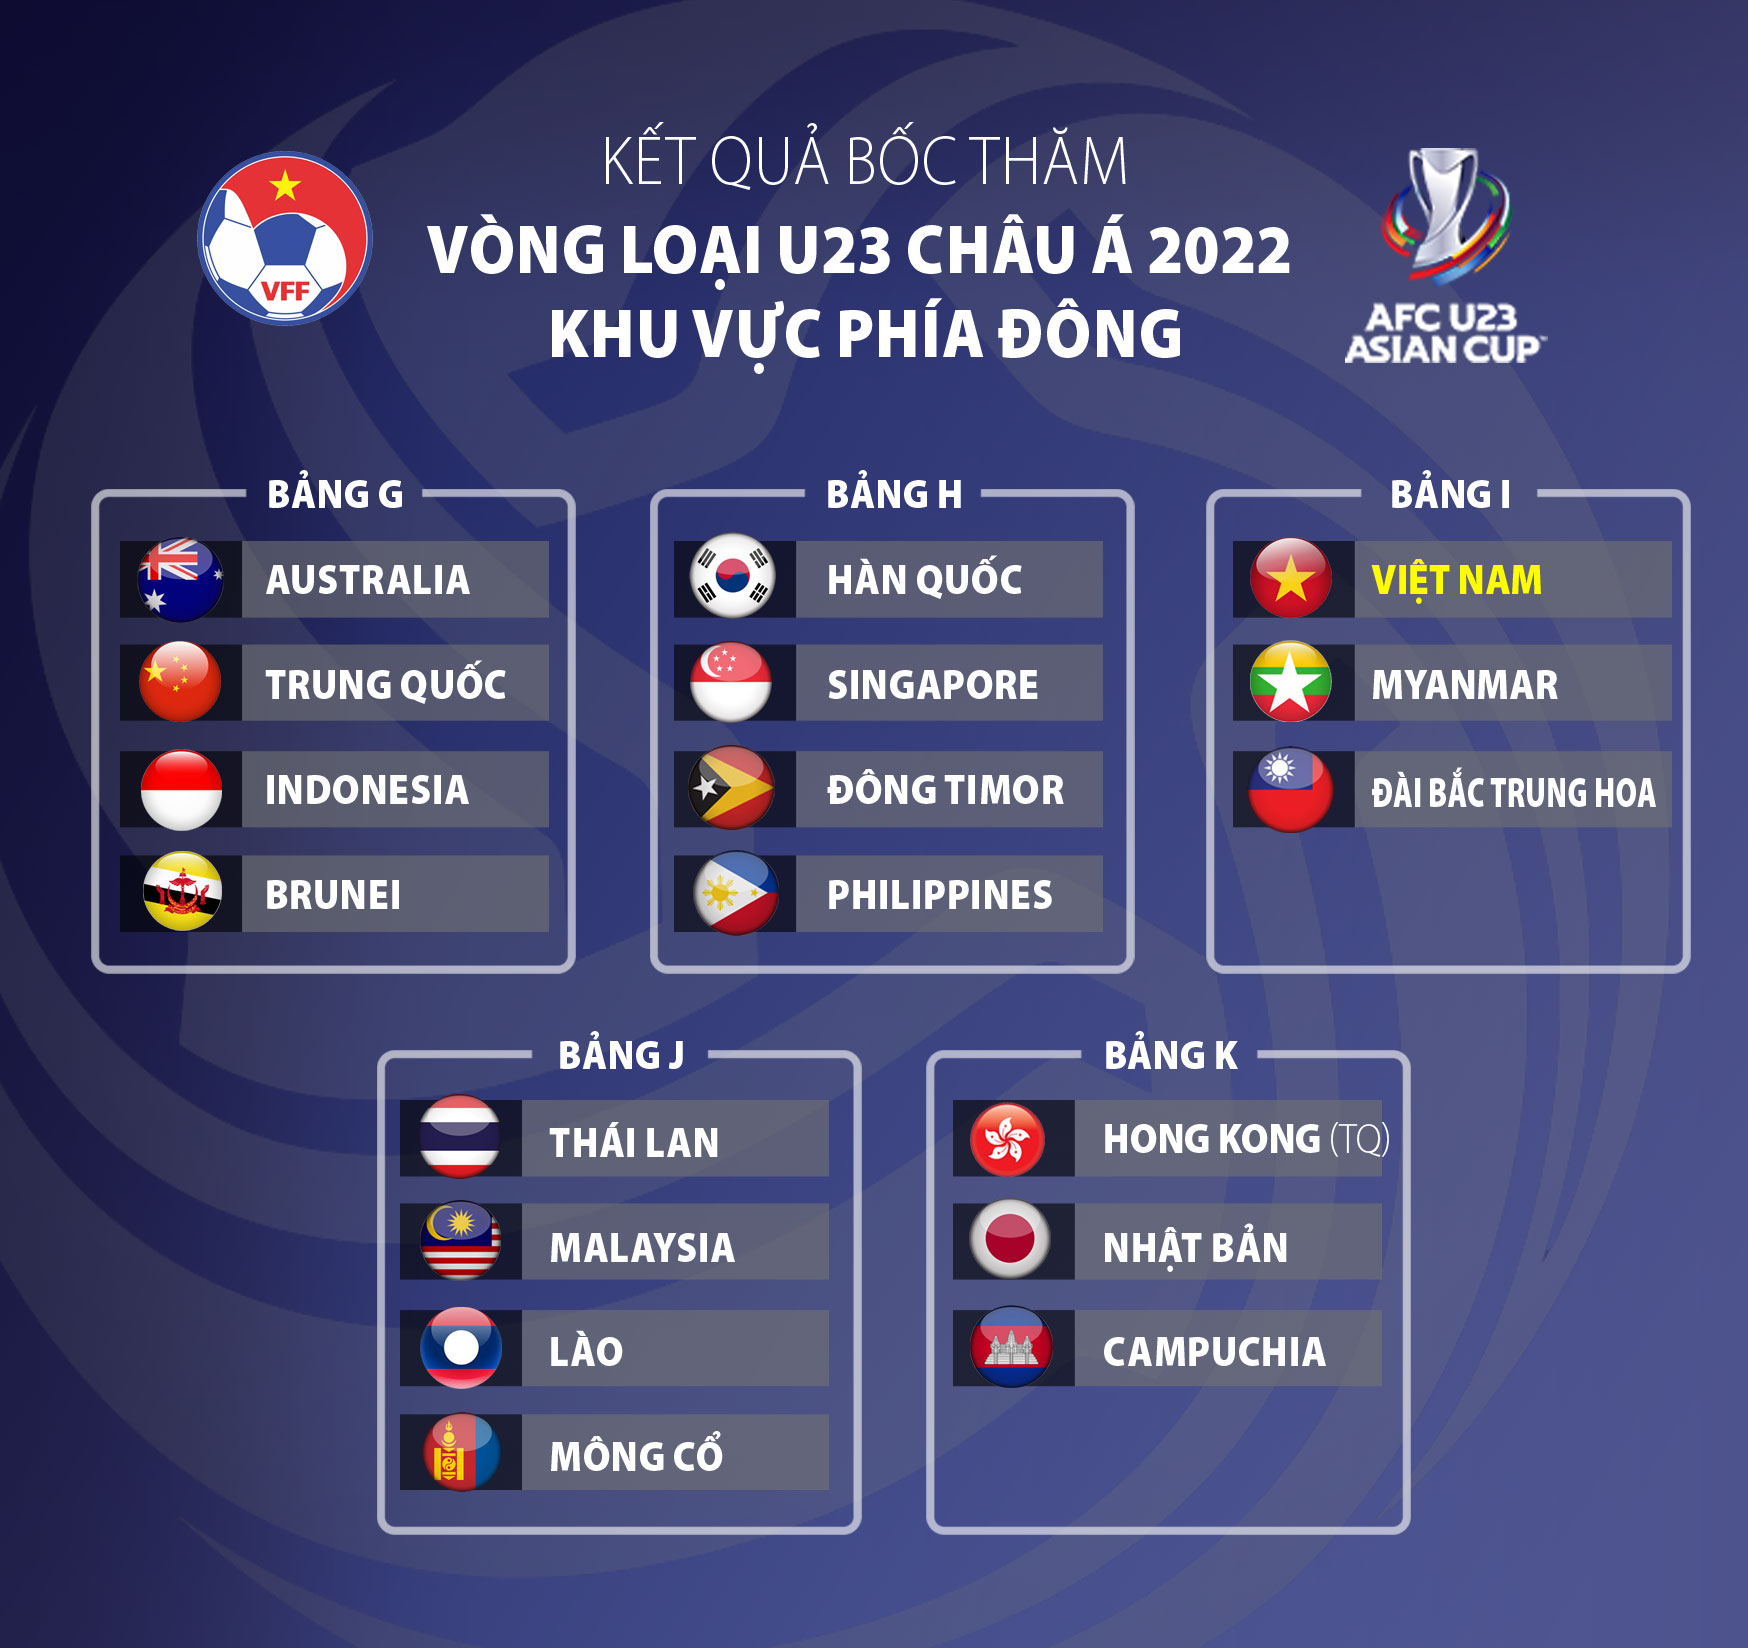 Bốc thăm lại, U23 Việt Nam chỉ còn 2 đối thủ ở vòng loại U23 châu Á - Ảnh 2.